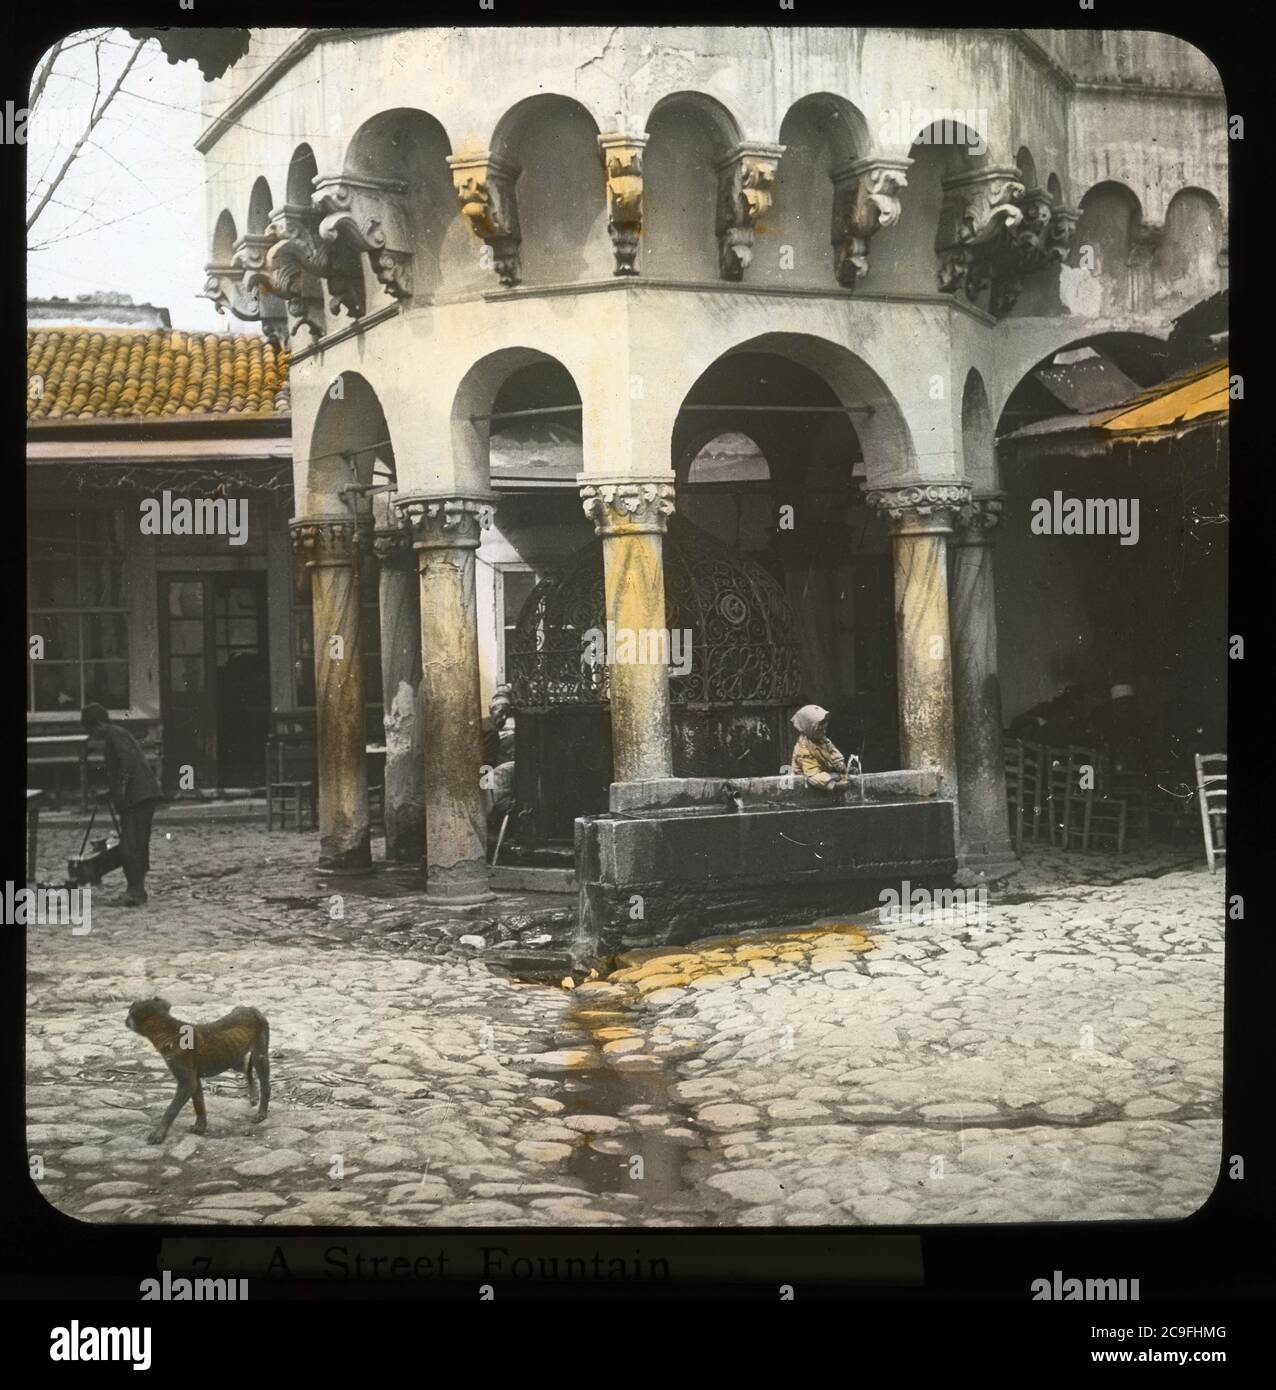 Şadırvan Camii Konak in Smyrna / Izmir, Türkei. Frau, die Wasser aus einem Wasserplatz neben dem Şadırvan zieht. Magerer Hund und Händler in der Nähe. Handkoloriertes Foto auf trockenem Glasplatte aus der Sammlung Herry W. Schaefer, um 1910. Stockfoto